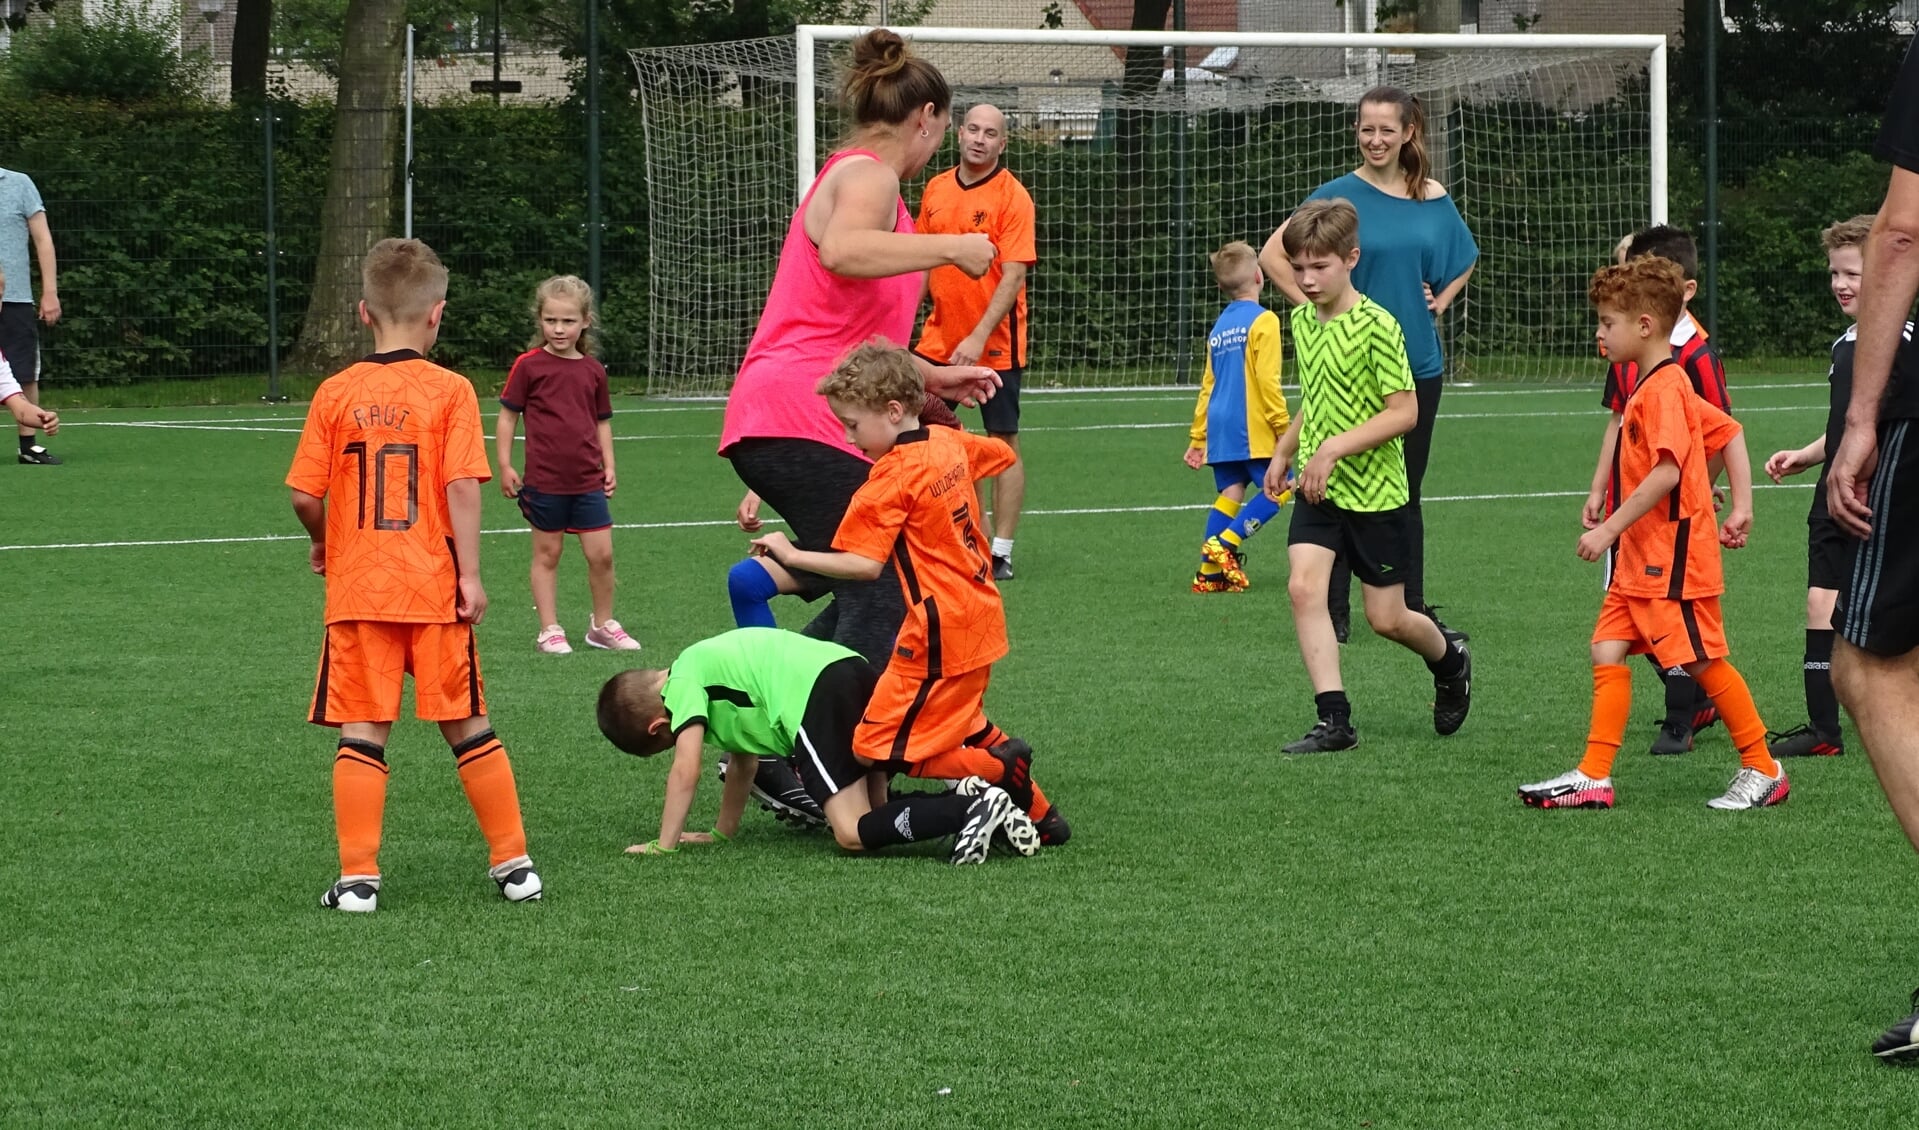 Omsingelingsvoetbal bij jongste jeugd tegen (groot)ouders, geen meter werd cadeau gegeven